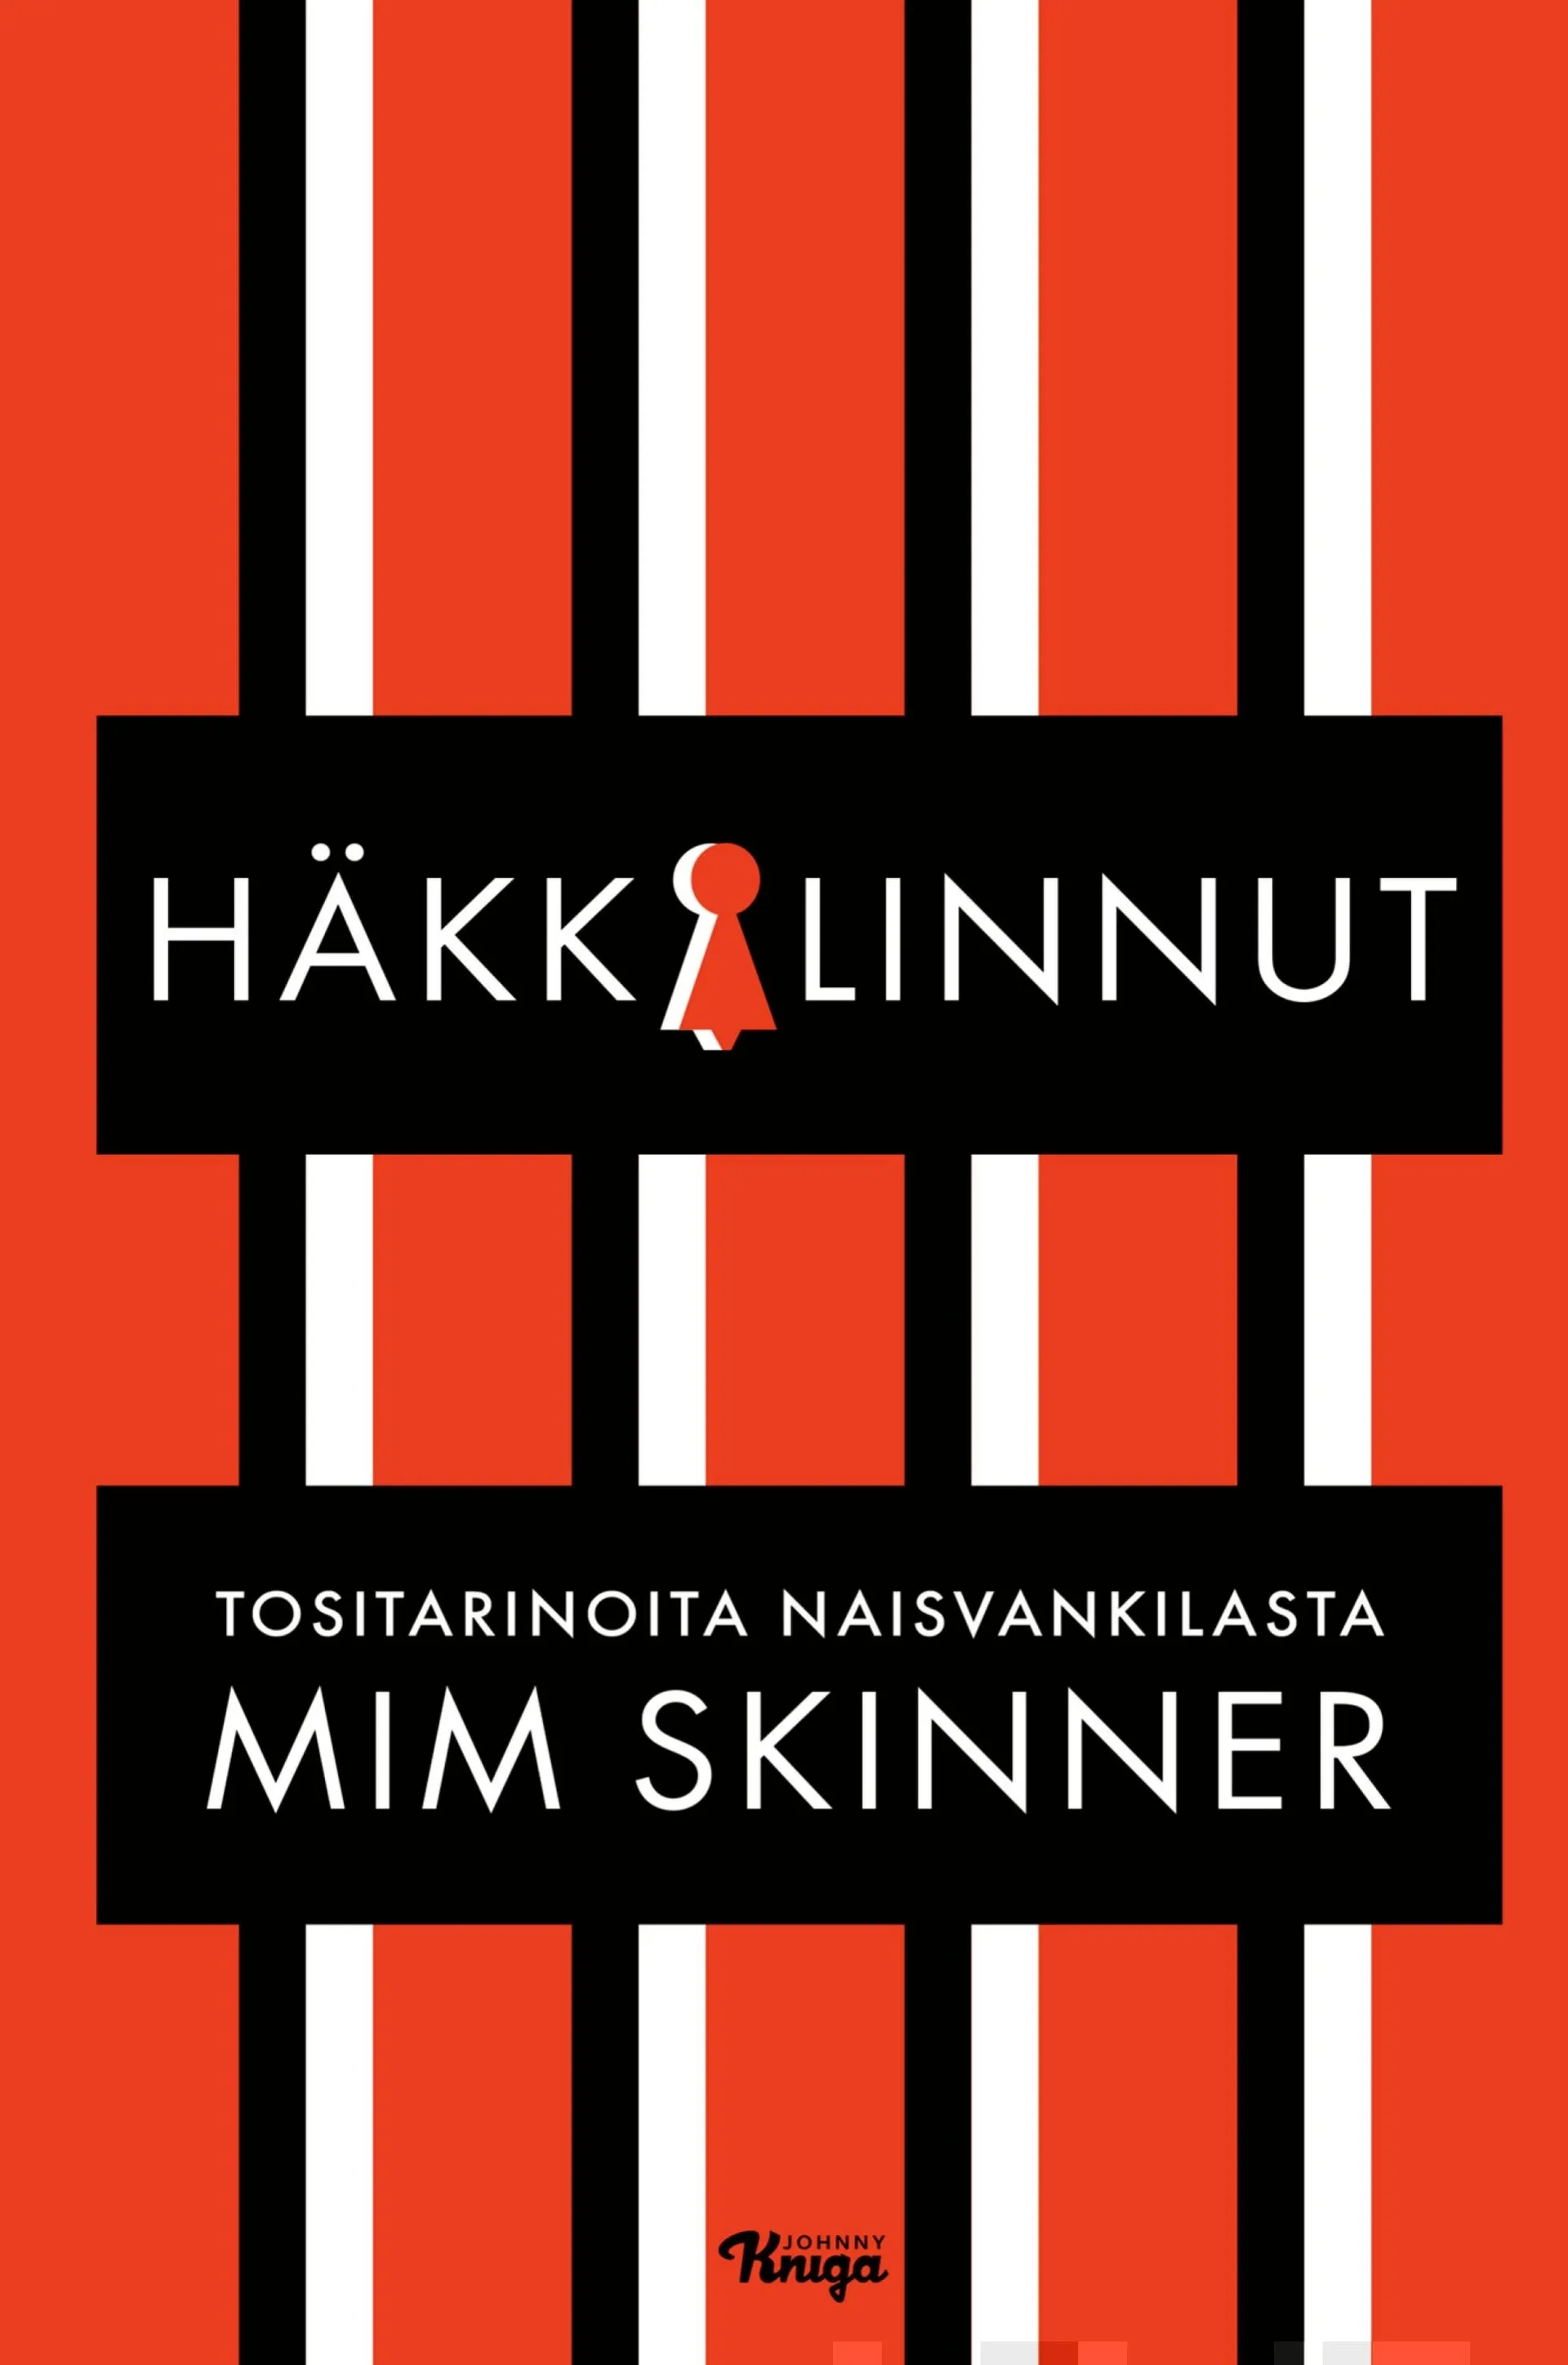 Skinner, Häkkilinnut - Tositarinoita naisvankilasta